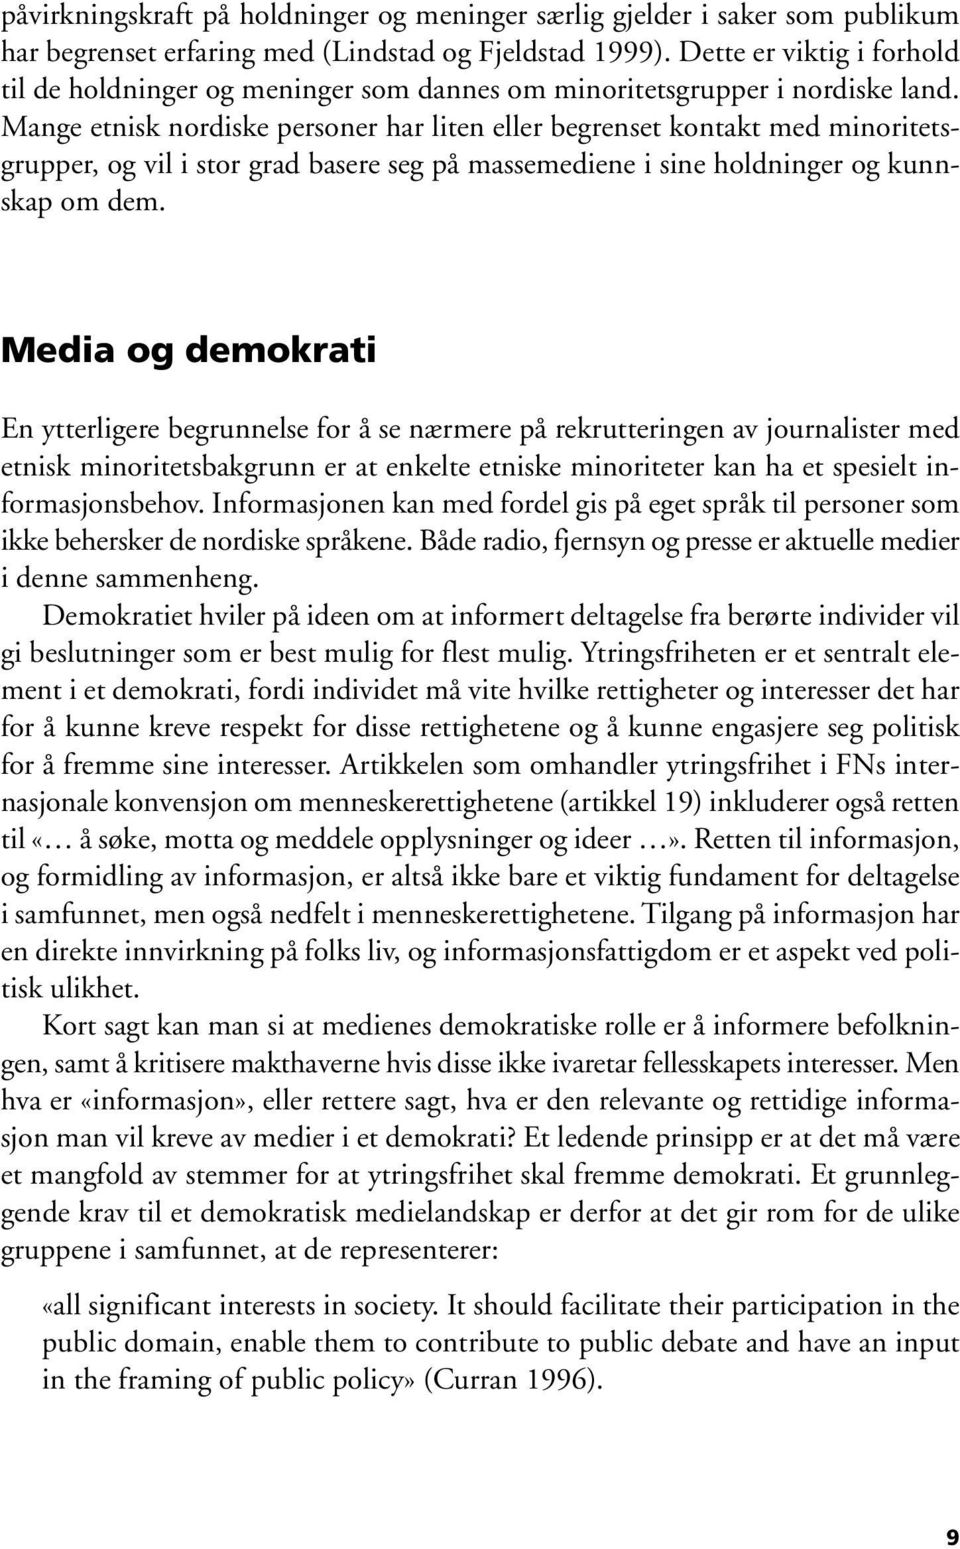 Mange etnisk nordiske personer har liten eller begrenset kontakt med minoritetsgrupper, og vil i stor grad basere seg på massemediene i sine holdninger og kunnskap om dem.